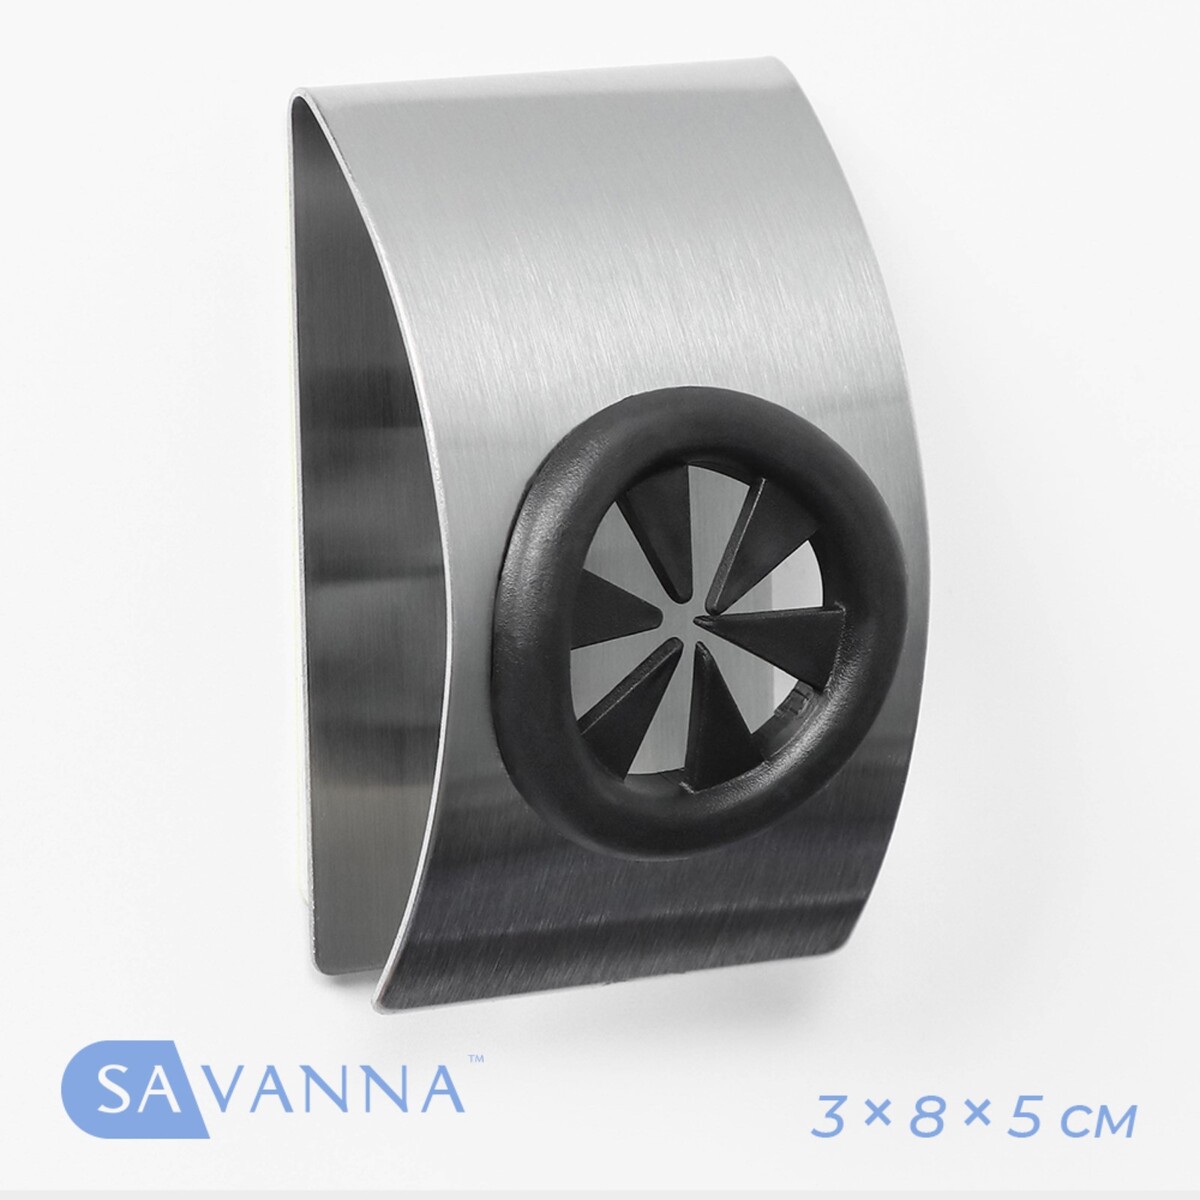 Металлический самоклеящийся держатель для салфеток и полотенец savanna chrome loft сlamp, 3×8×5 см нож консервный с открывалкой attribute gadget viva agc071 chrome